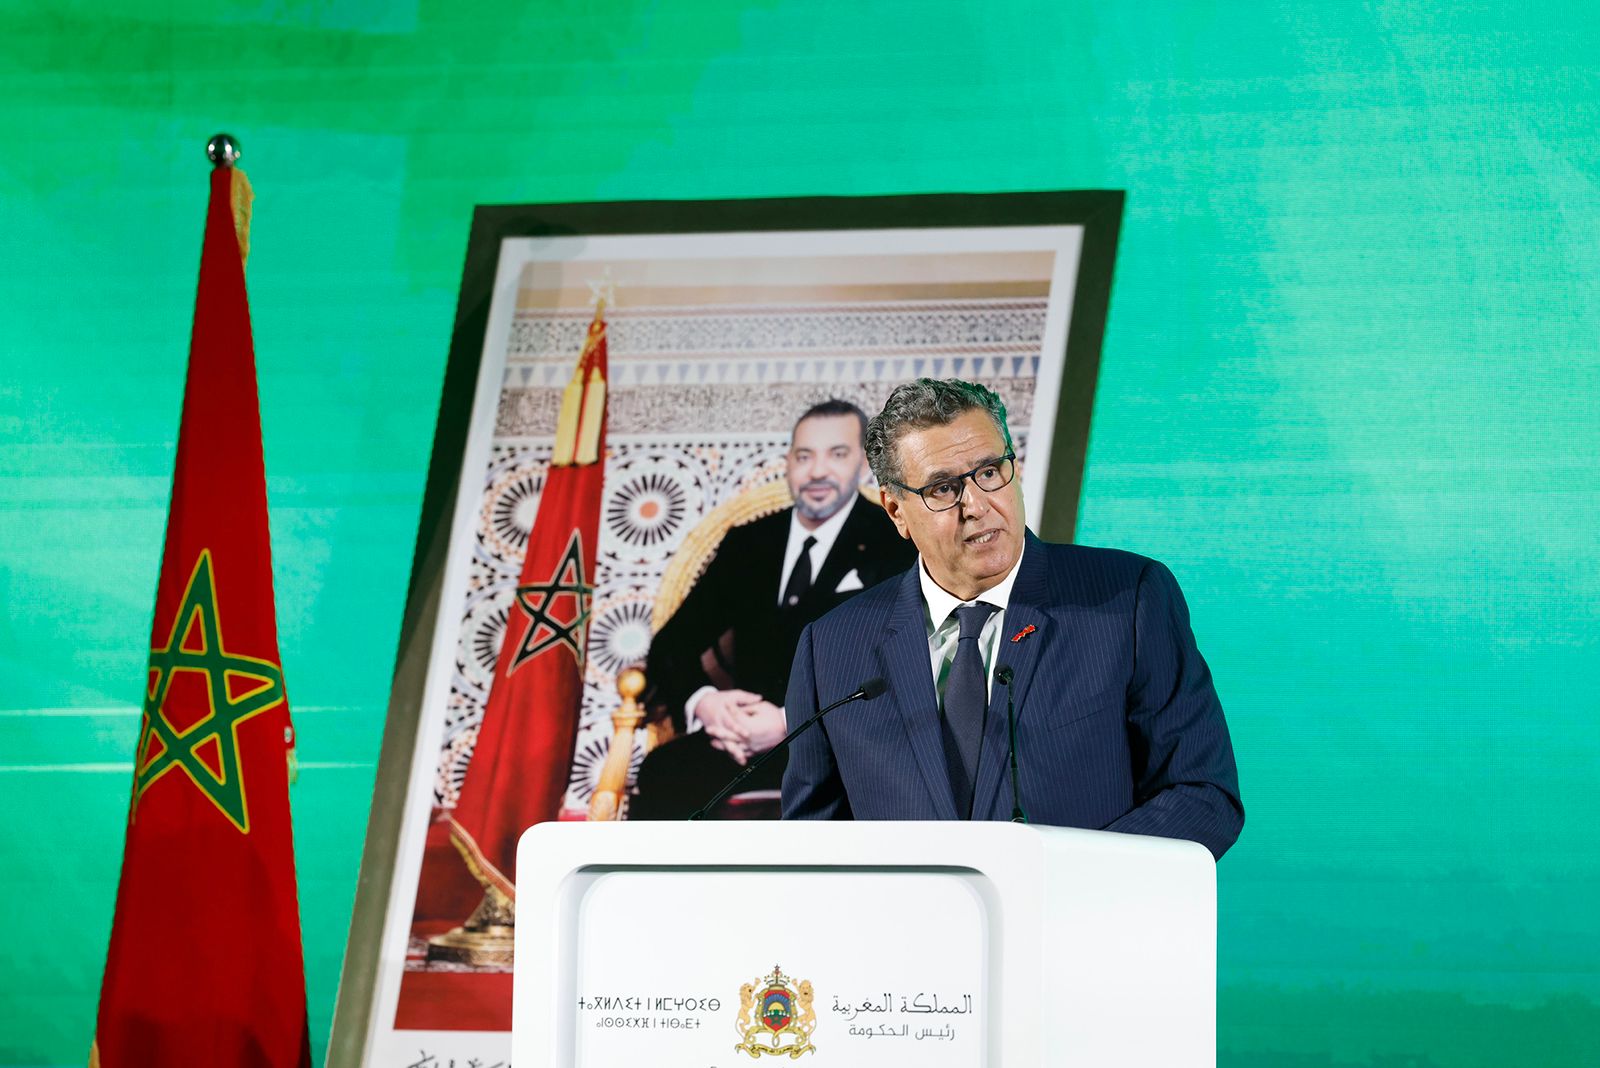 رئيس الحكومة: المغرب تخطى مرحلة تاريخية جديدة وأثبت سلامة نظامه المالي